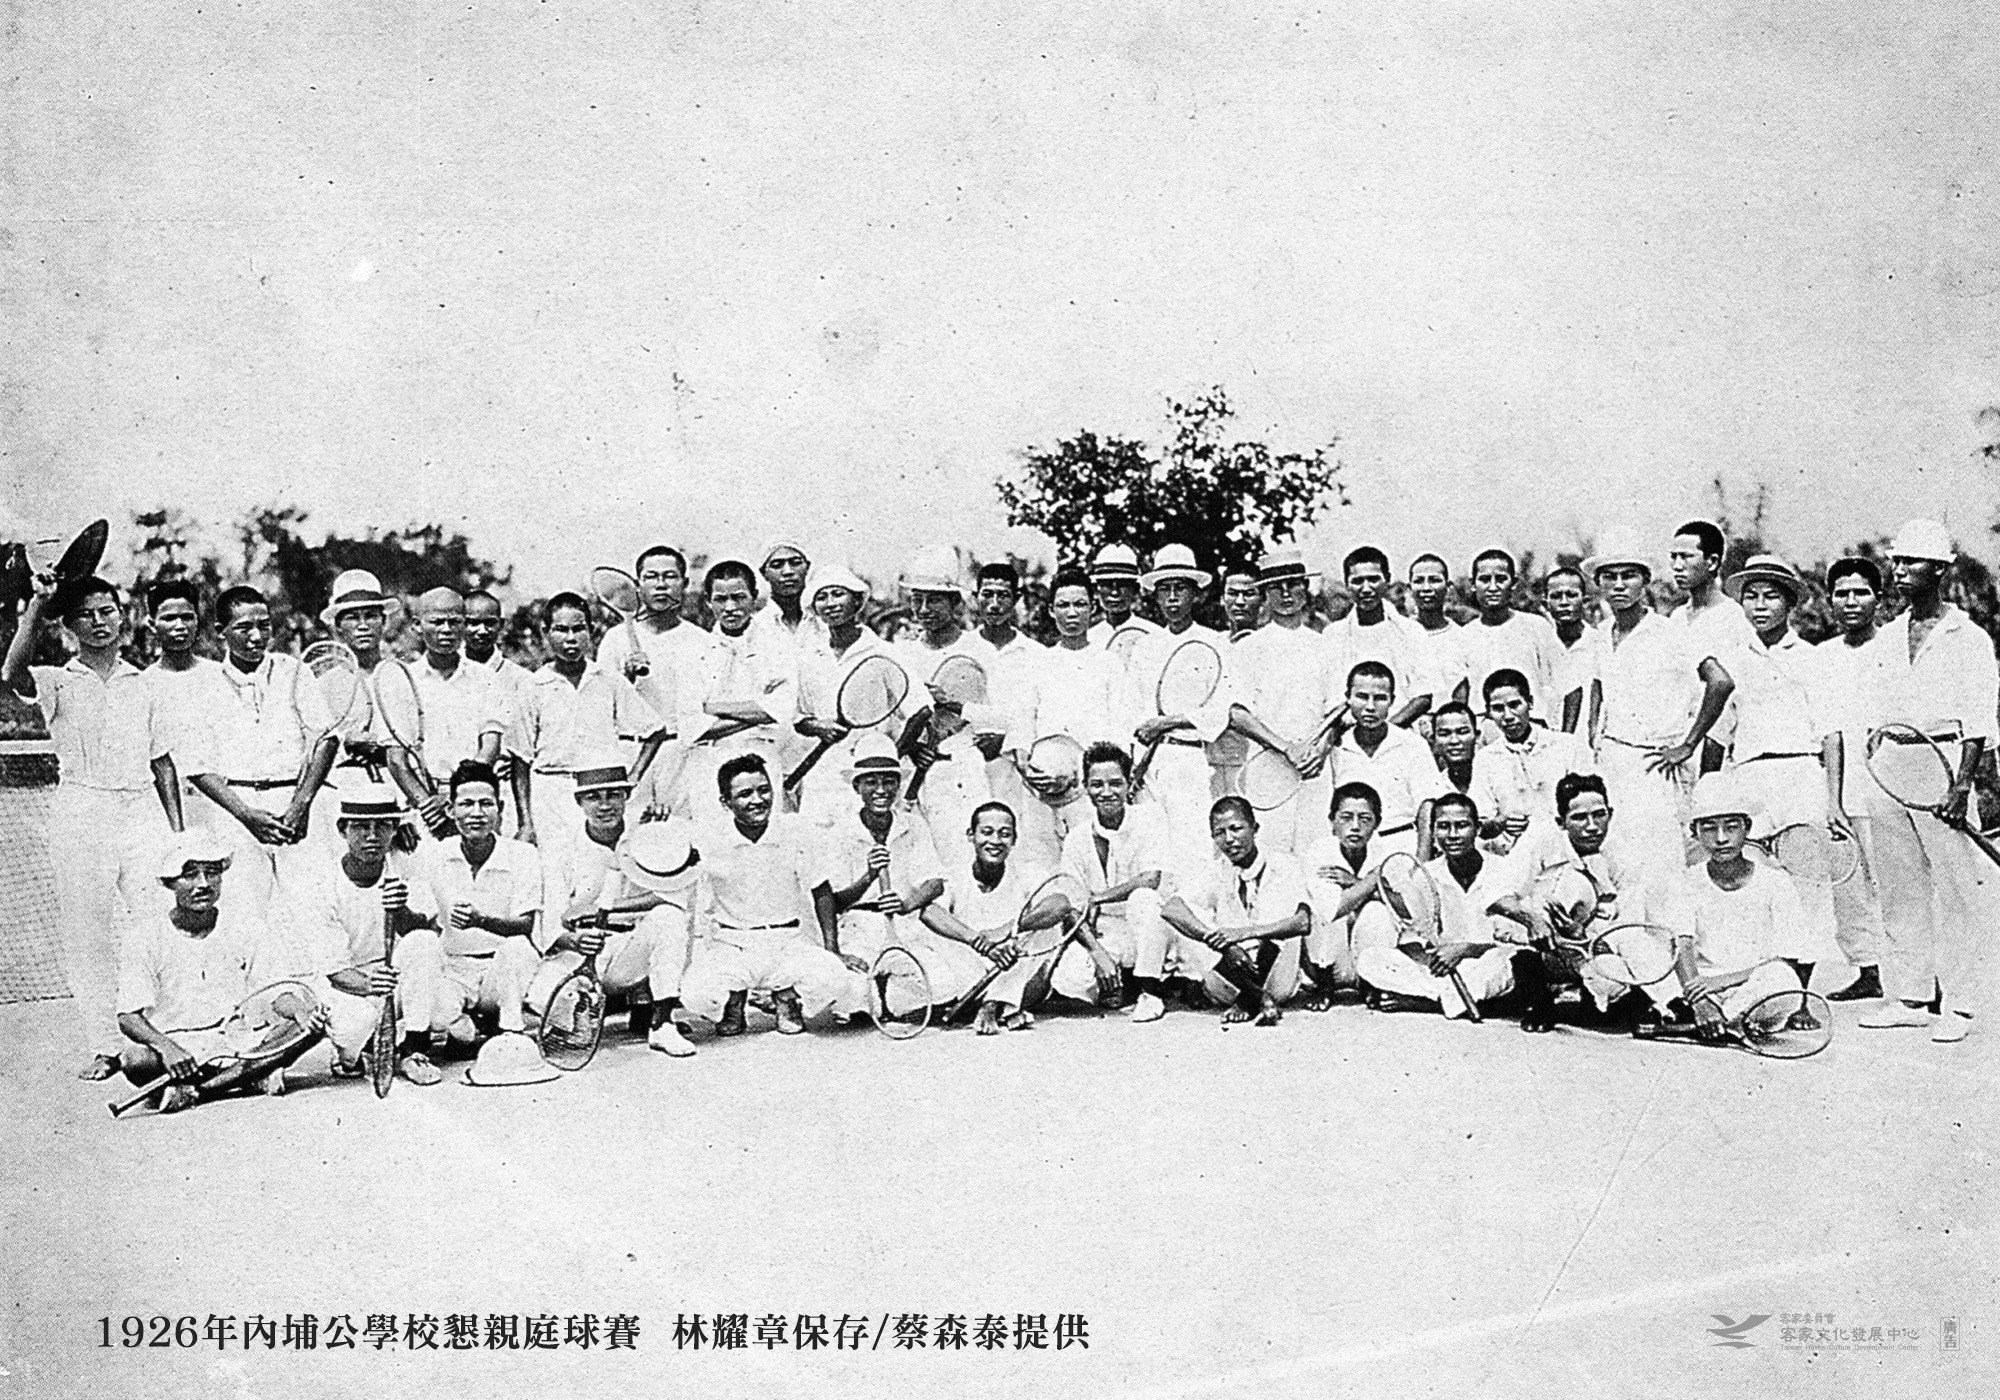 1926年內埔公學校懇親庭球賽，蔡森泰提供